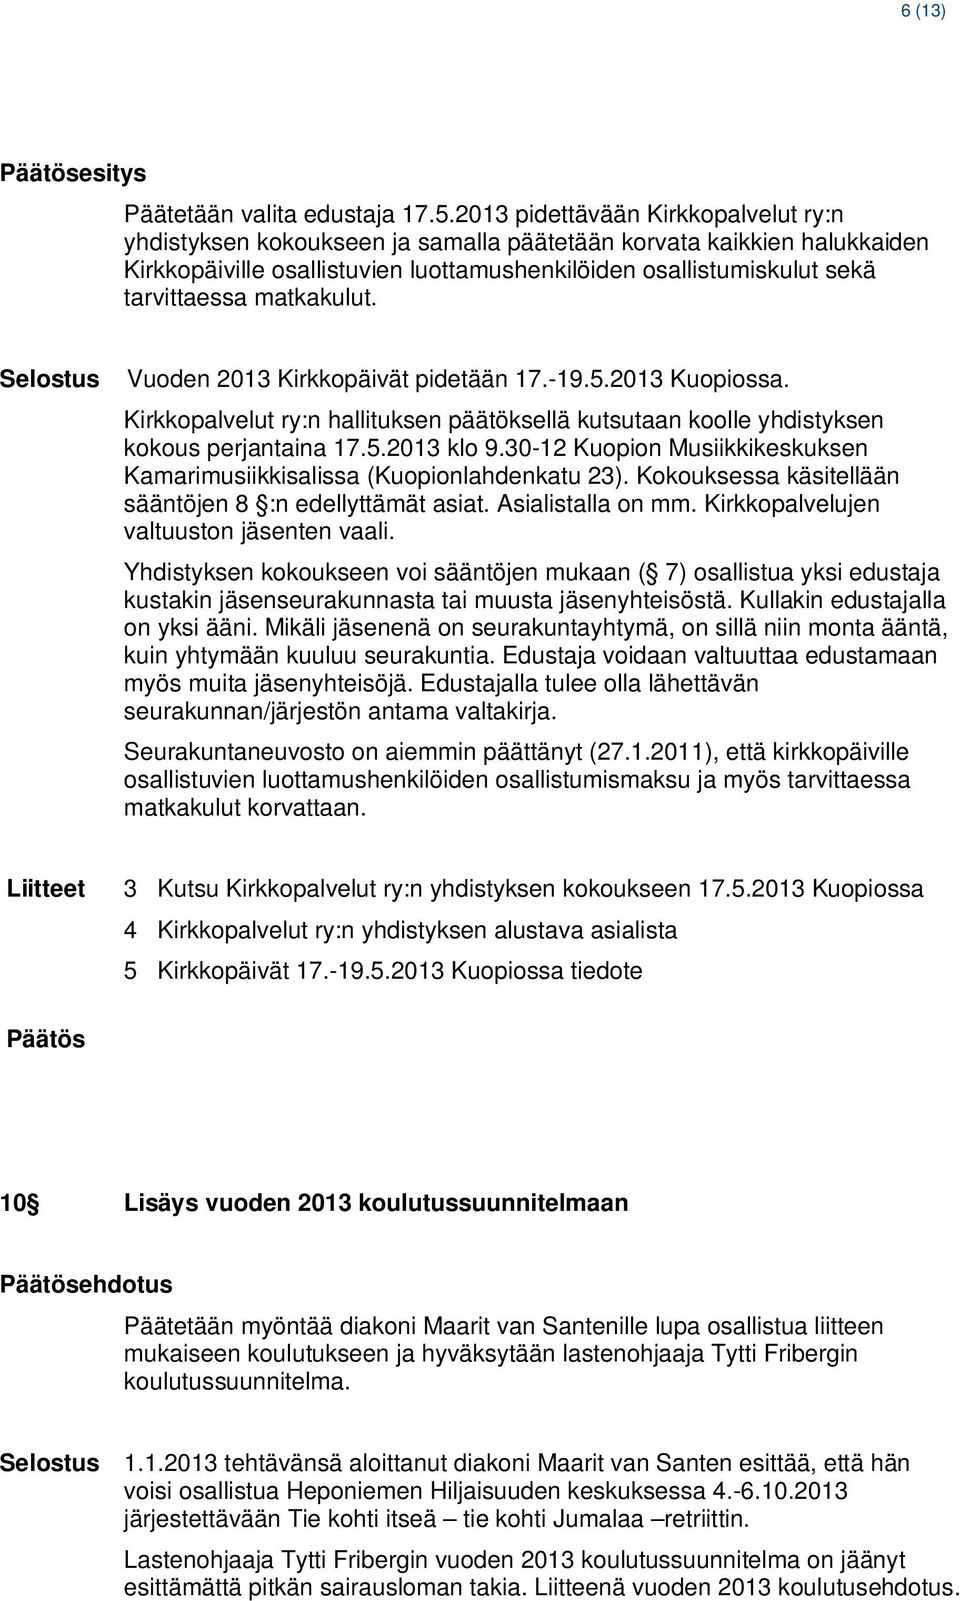 matkakulut. Vuoden 2013 Kirkkopäivät pidetään 17.-19.5.2013 Kuopiossa. Kirkkopalvelut ry:n hallituksen päätöksellä kutsutaan koolle yhdistyksen kokous perjantaina 17.5.2013 klo 9.